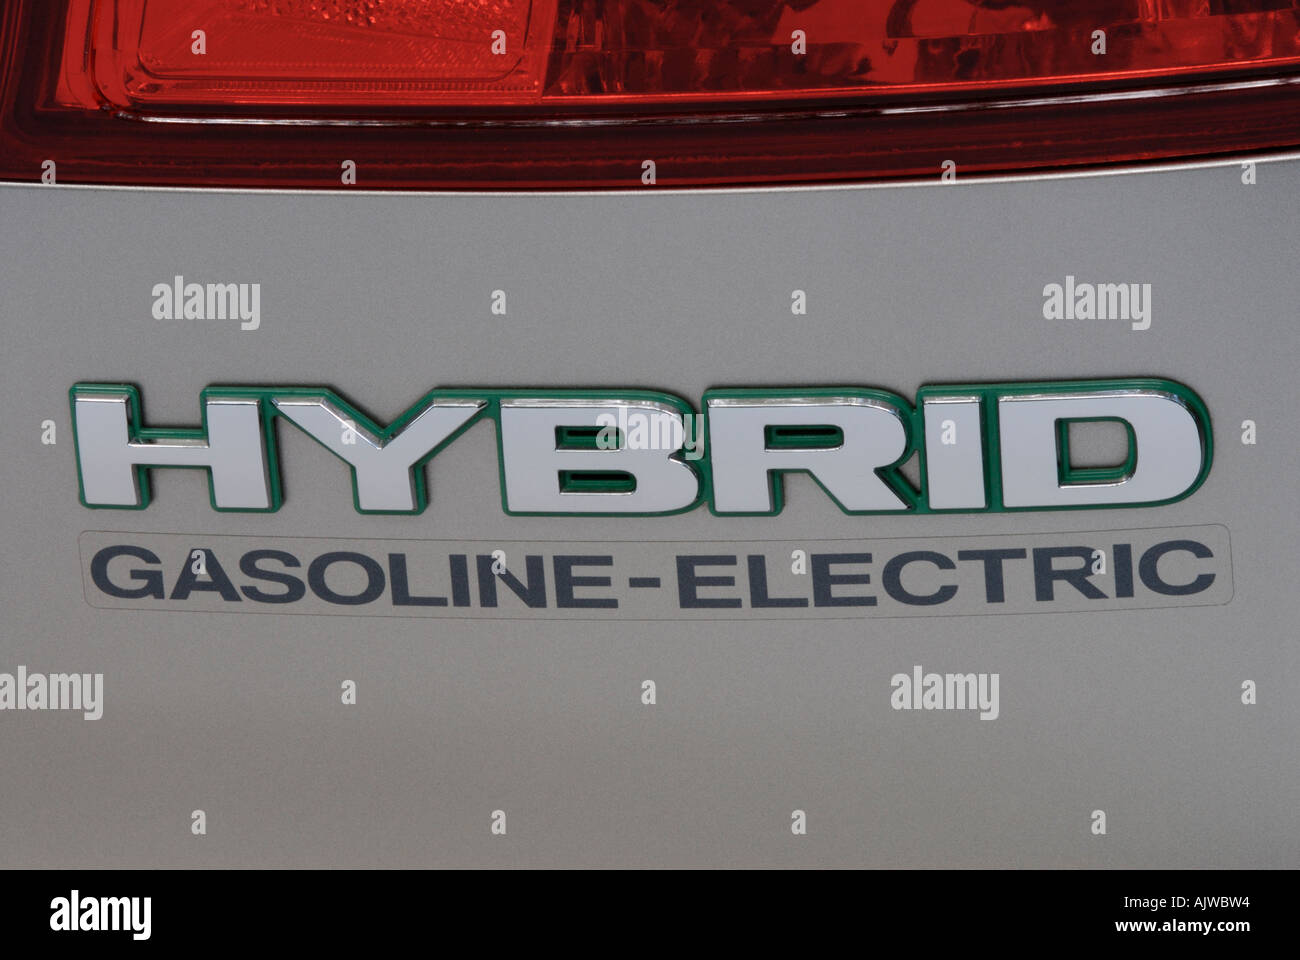 Coche híbrido gasolina-eléctrico logo Foto de stock